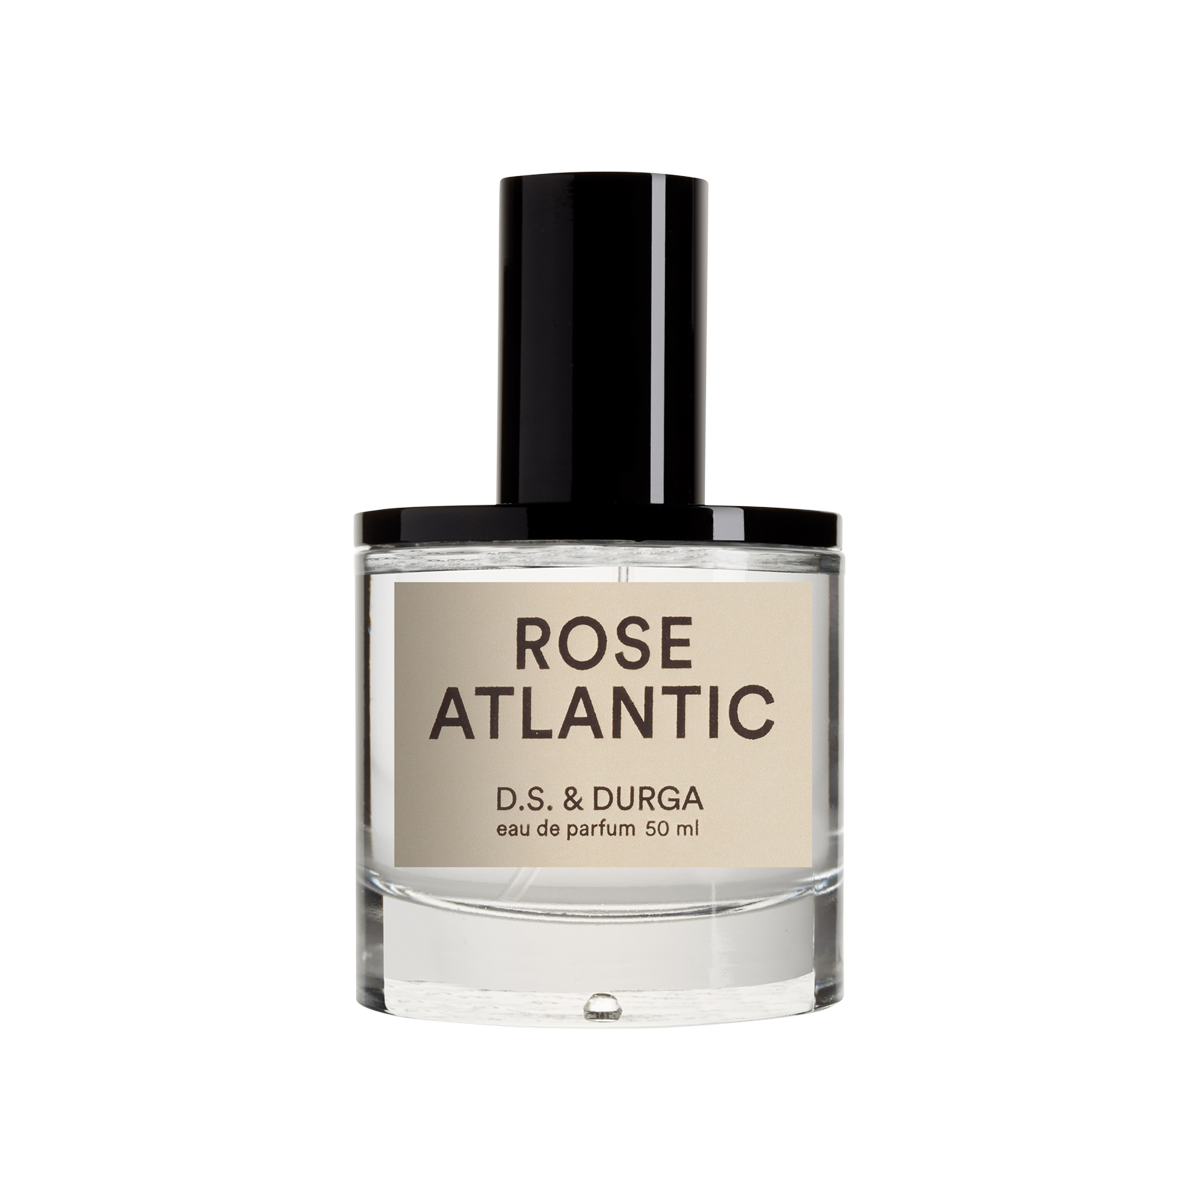 D.S. & DURGA - Rose Atlantic Eau de Parfum